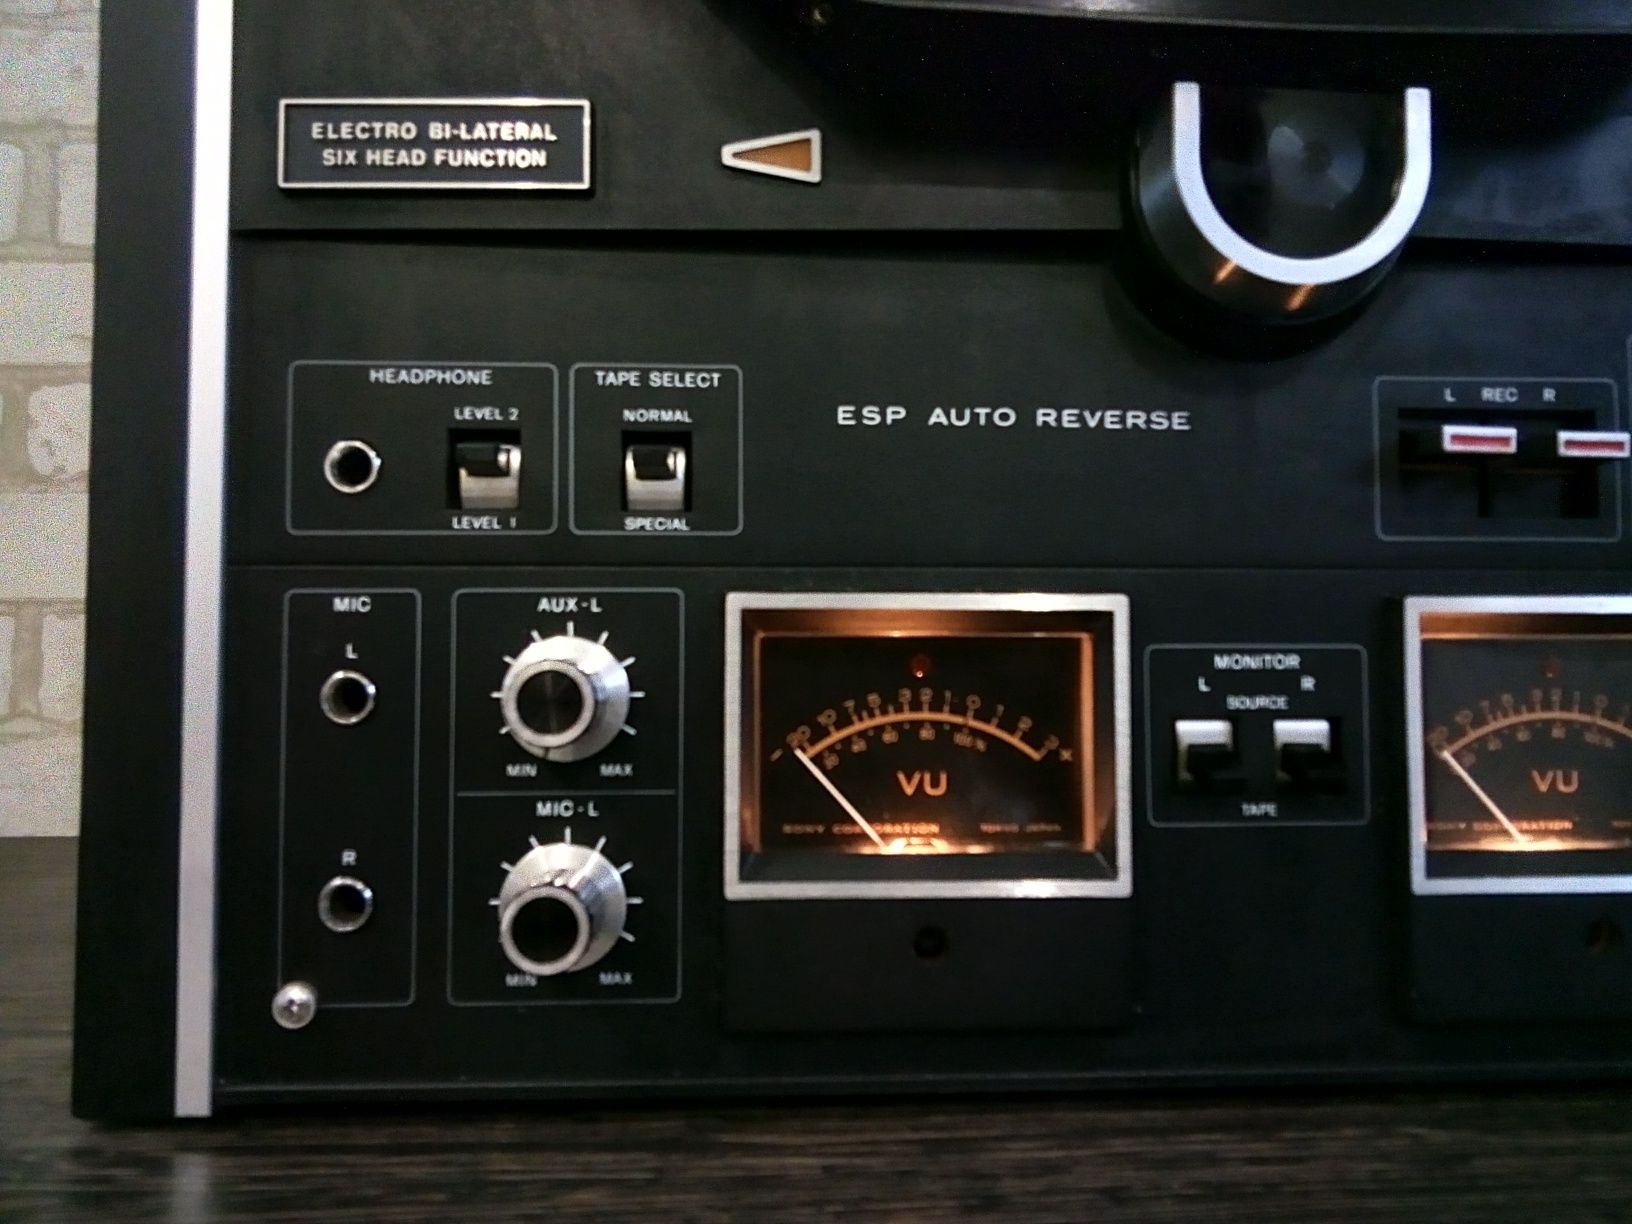 Sony TC-580 tapecordet 1971-75